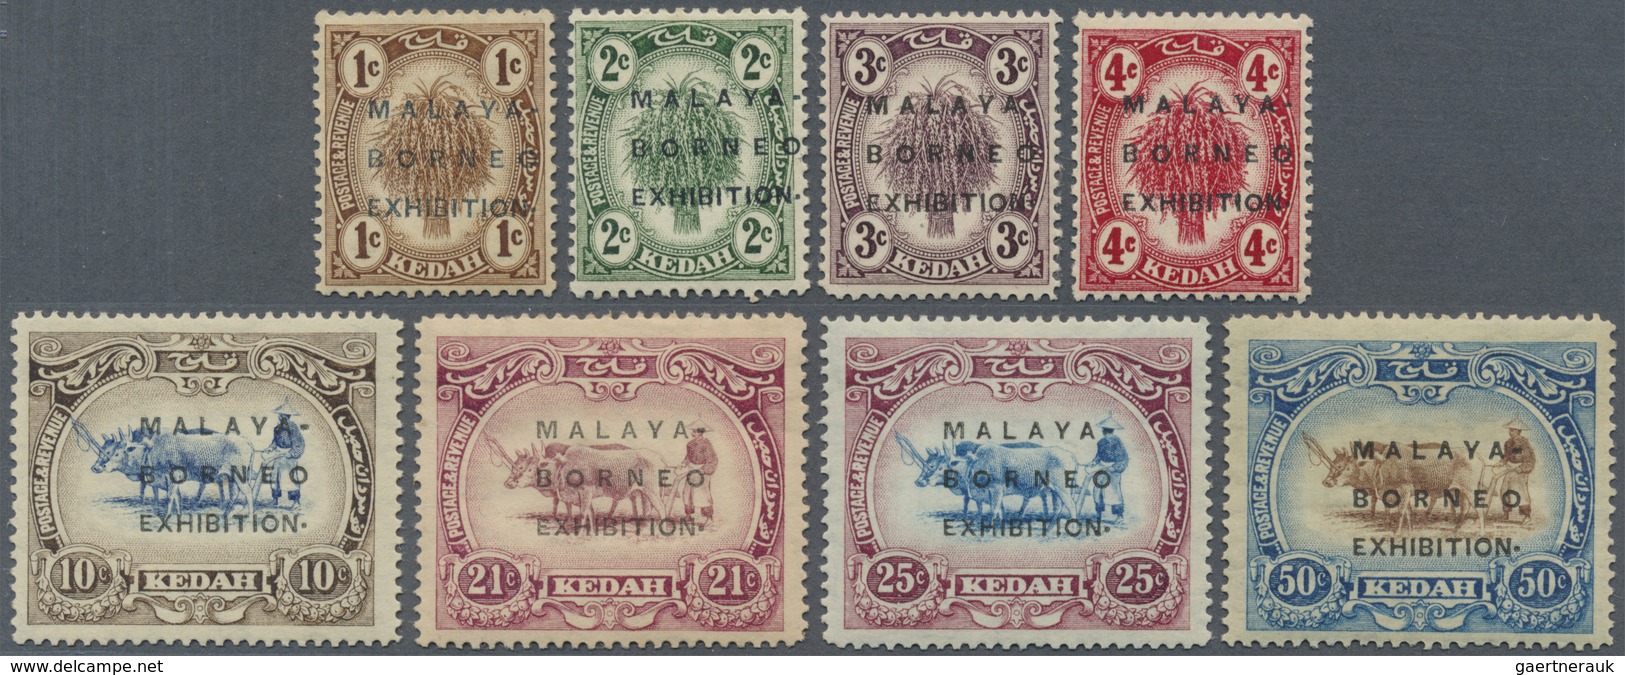 * Malaiische Staaten - Kedah: 1922, Malaya-Borneo Exhibition Complete Set Of Eight With Opt. In Type I - Kedah